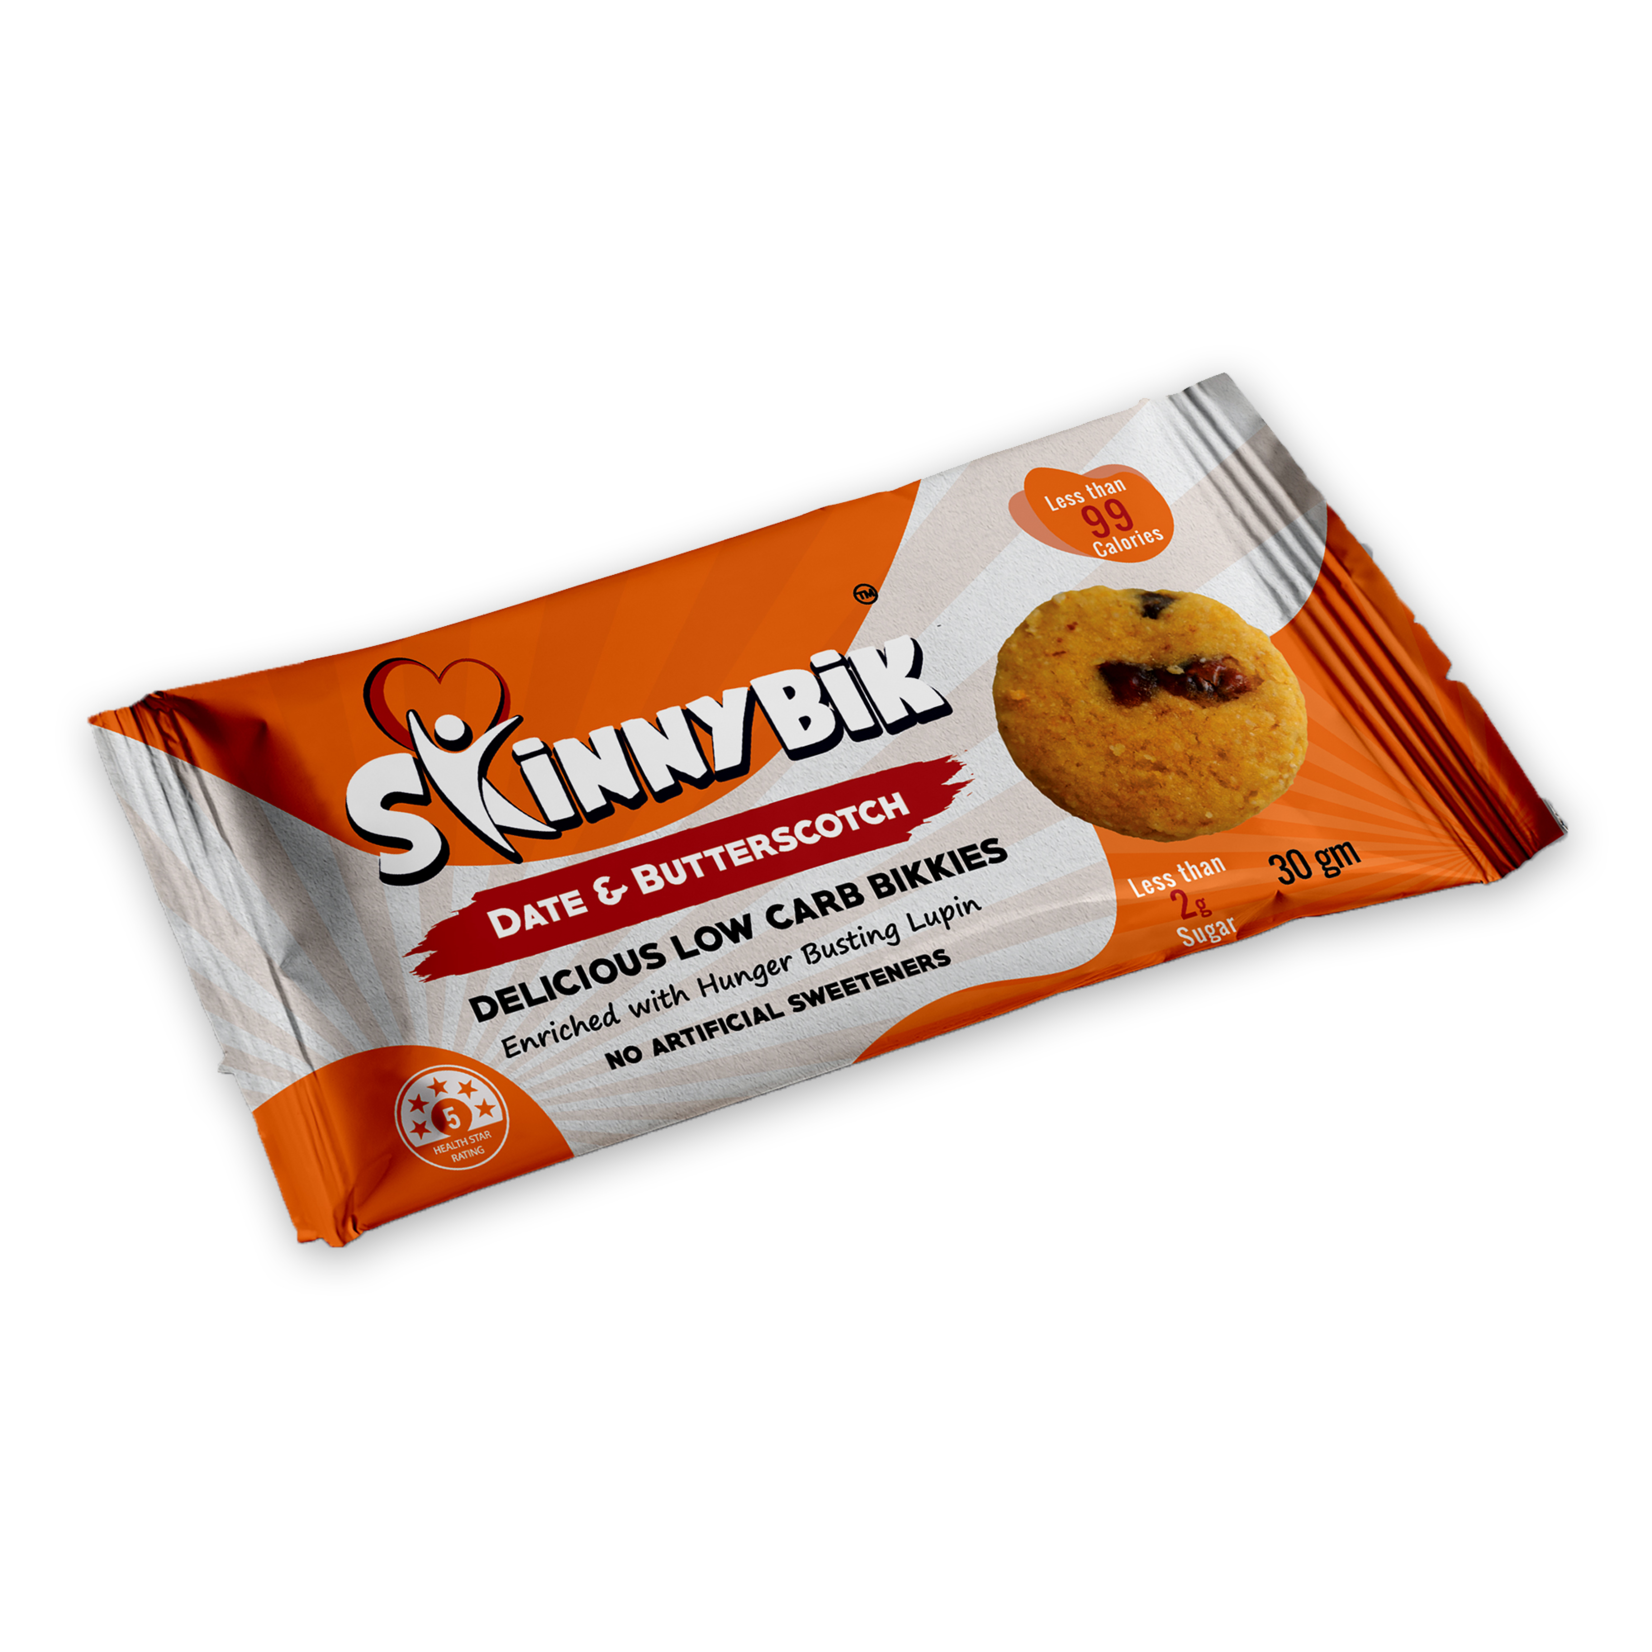 Skinnybik Skinnybik Low Carb Biscuits Date & Butterscotch